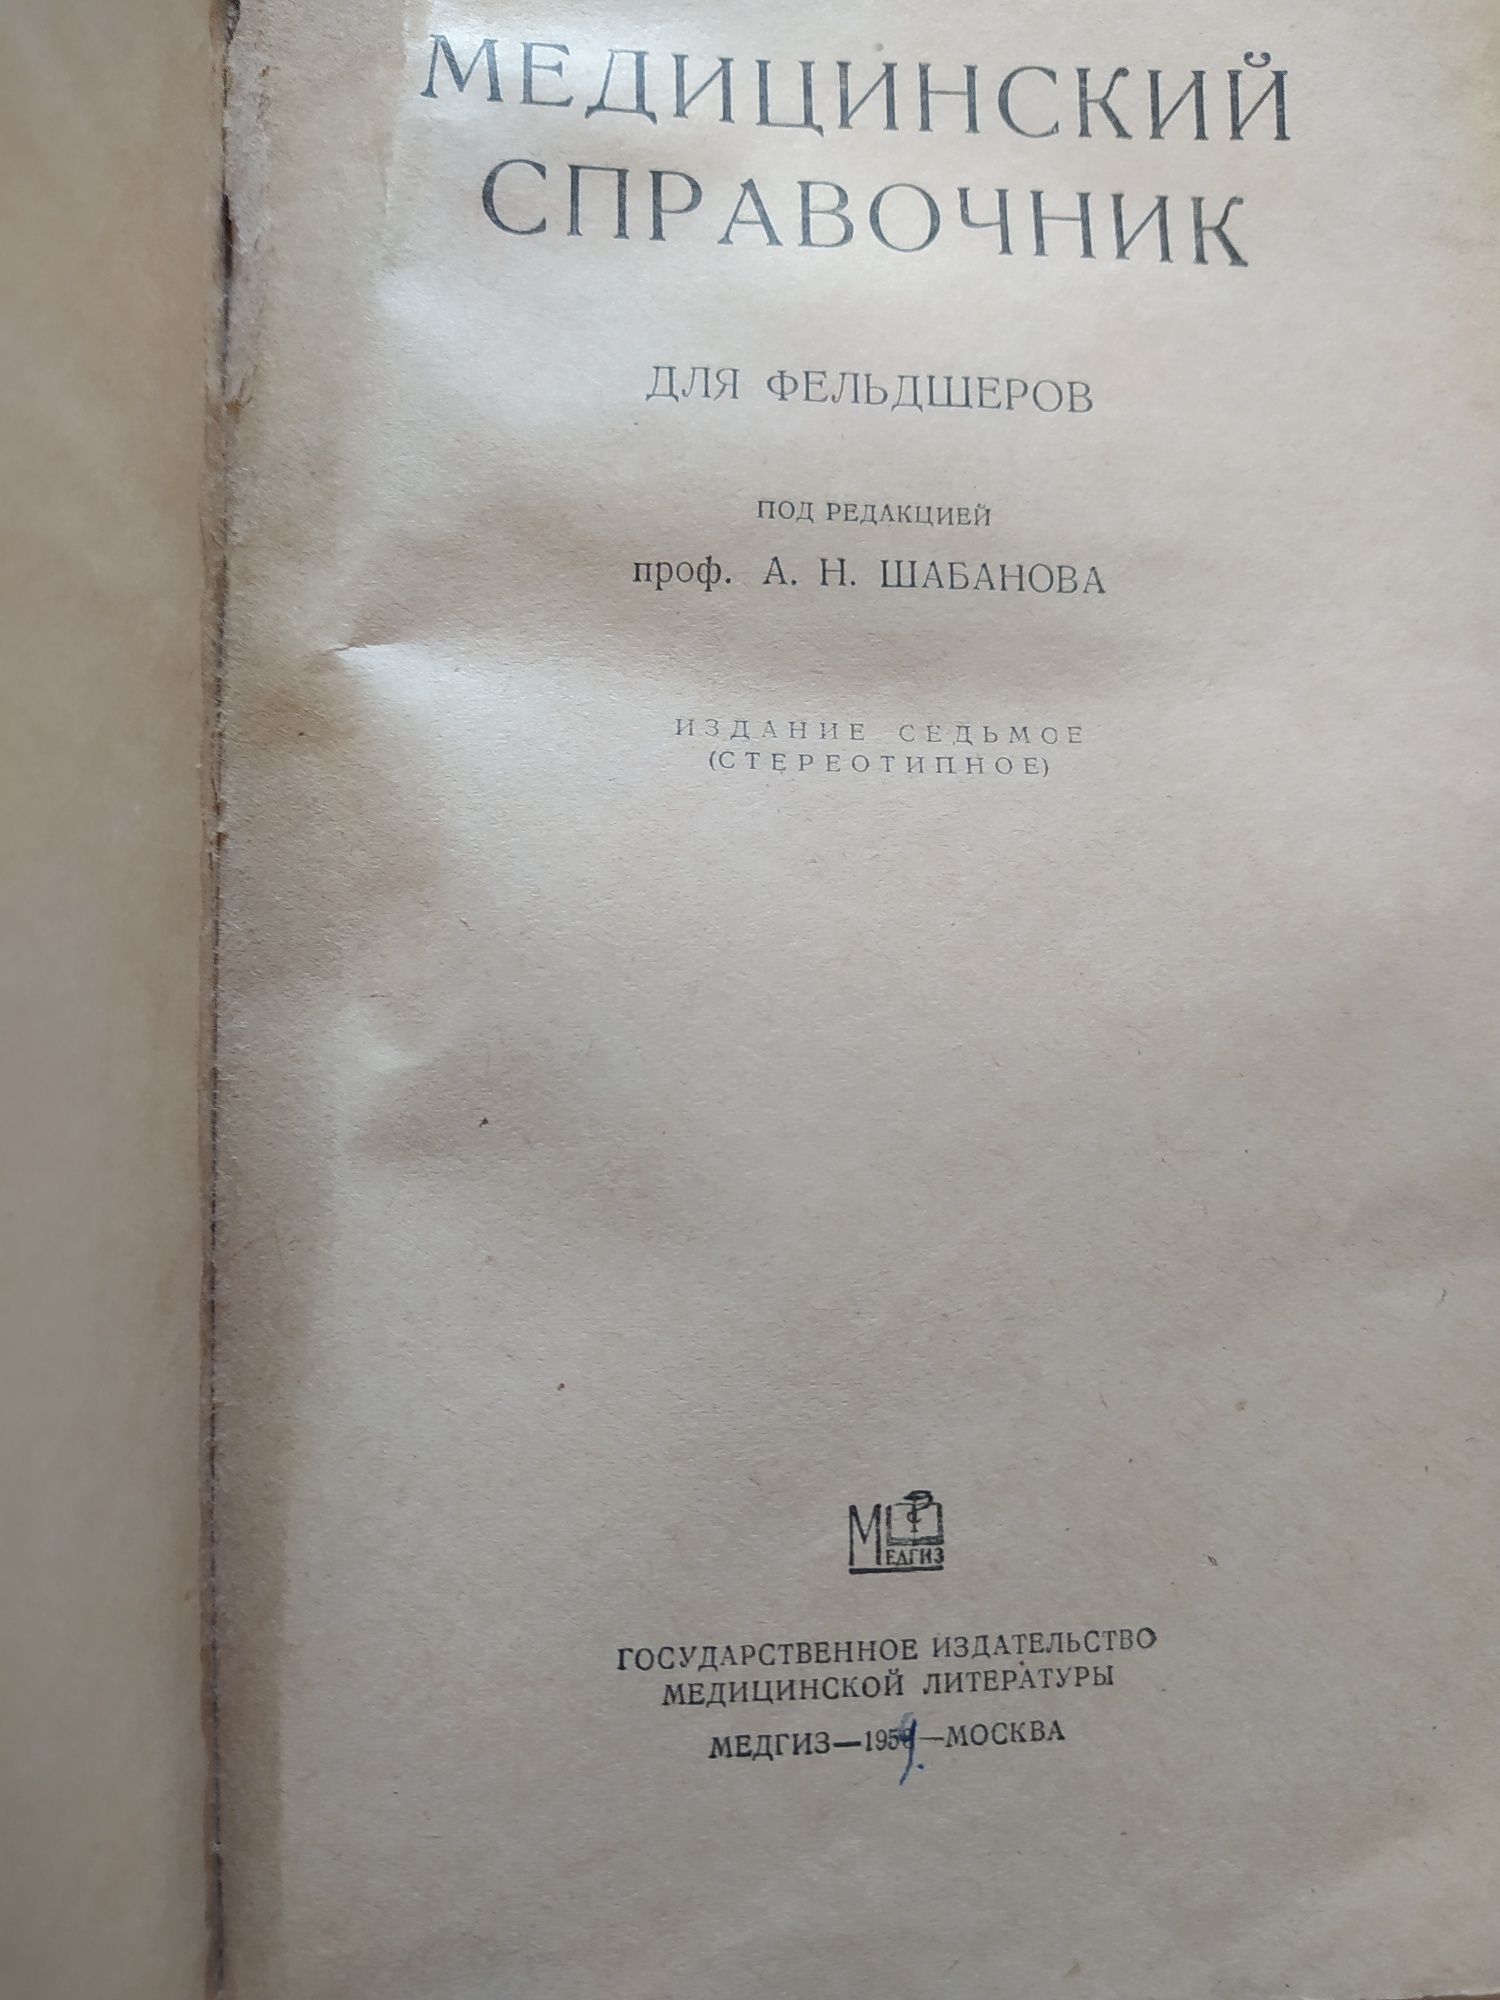 Антикварные книги медицинские и по химии.